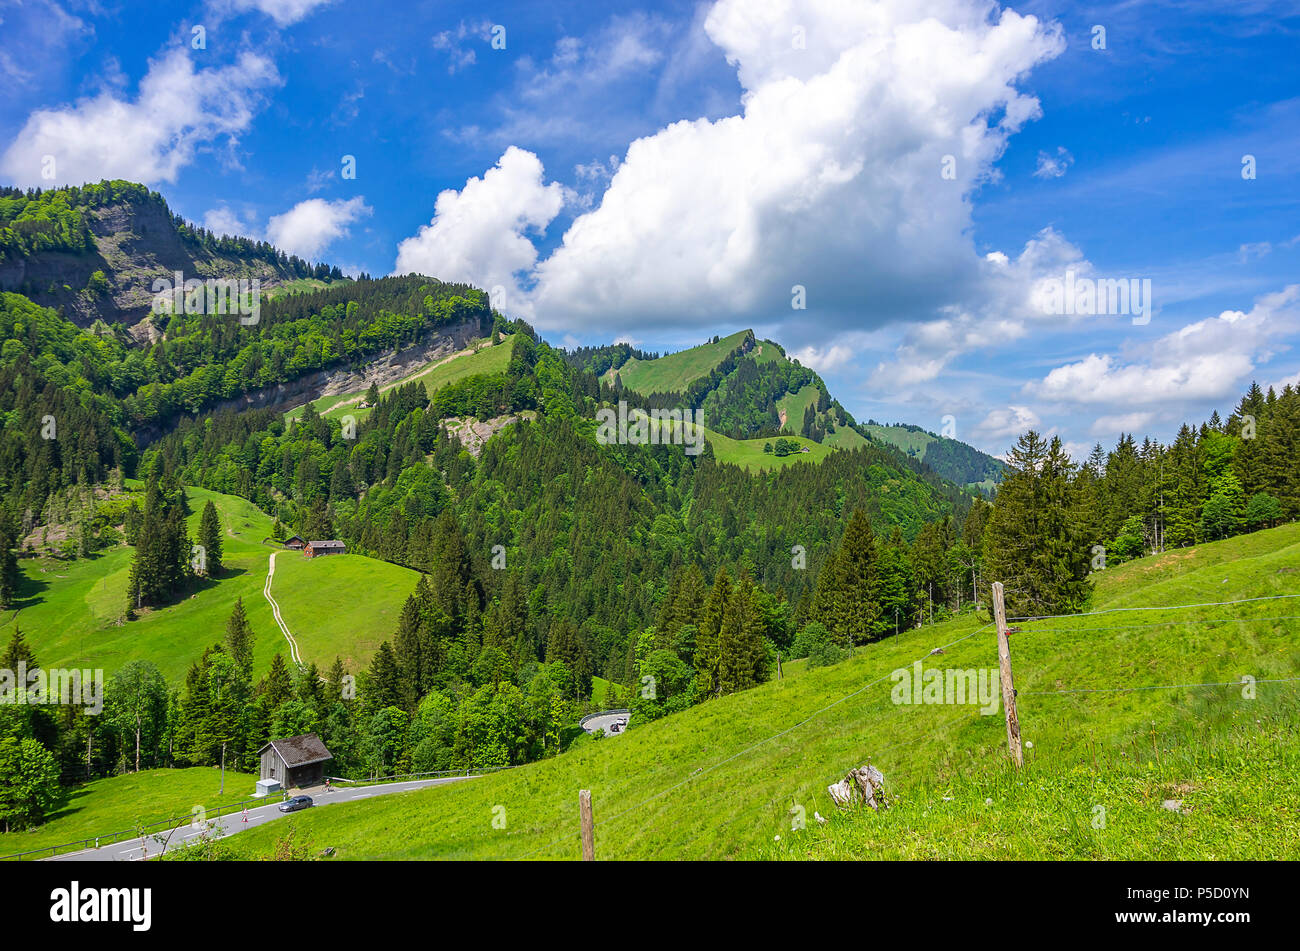 Mountain landscape in the Swiss Alps near Urnäsch and Schwägalp, Canton Appenzell Ausserrhoden, Switzerland. Stock Photo